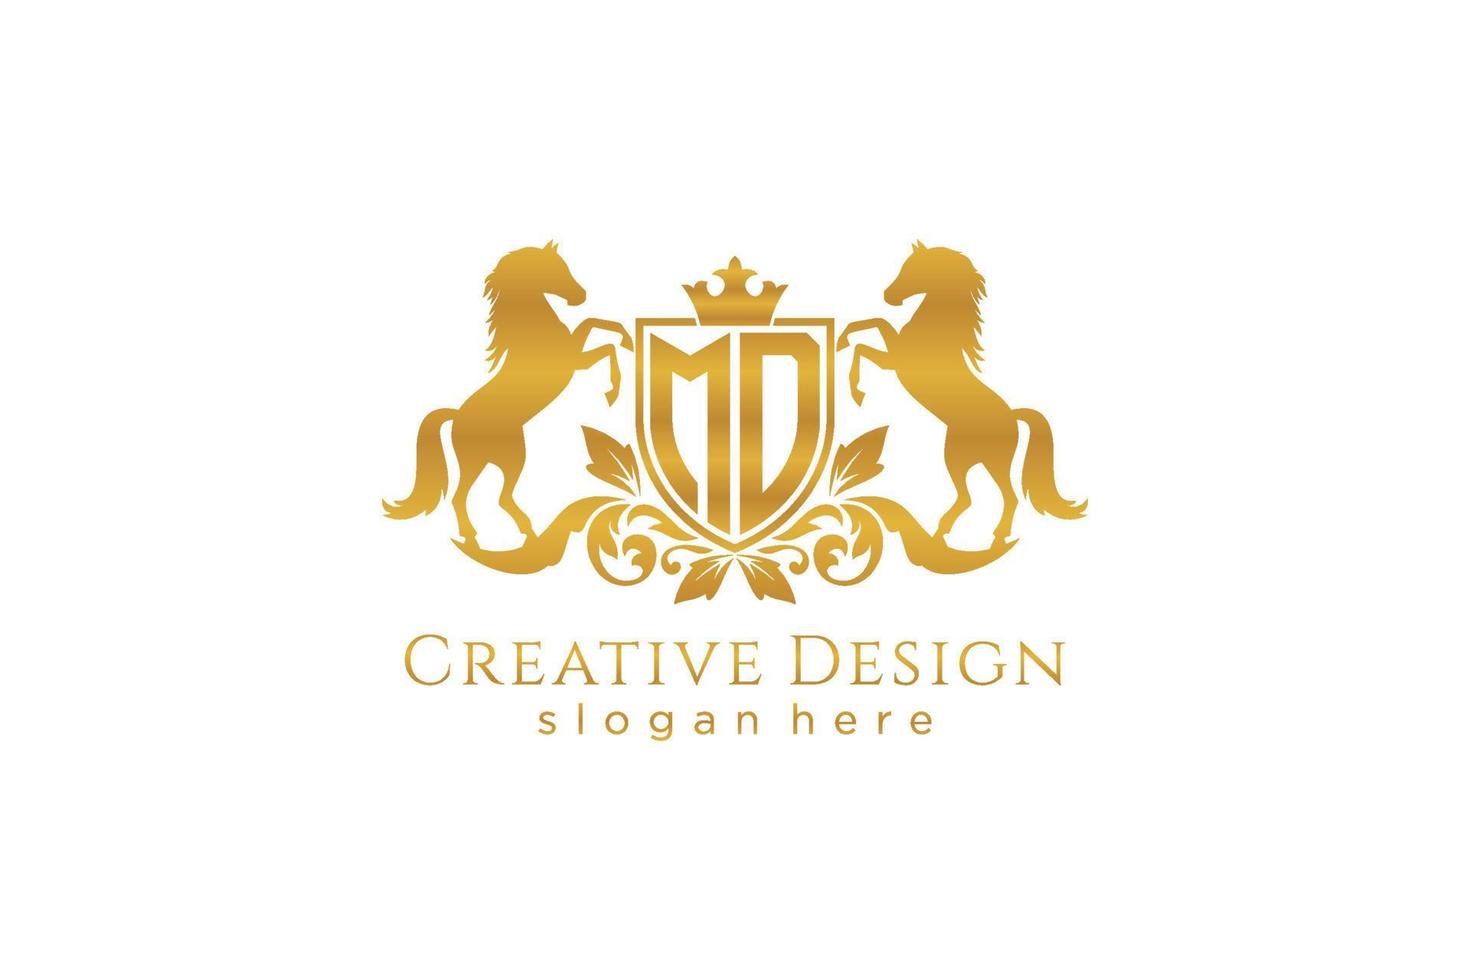 cresta dorada retro md inicial con escudo y dos caballos, plantilla de insignia con pergaminos y corona real - perfecto para proyectos de marca de lujo vector